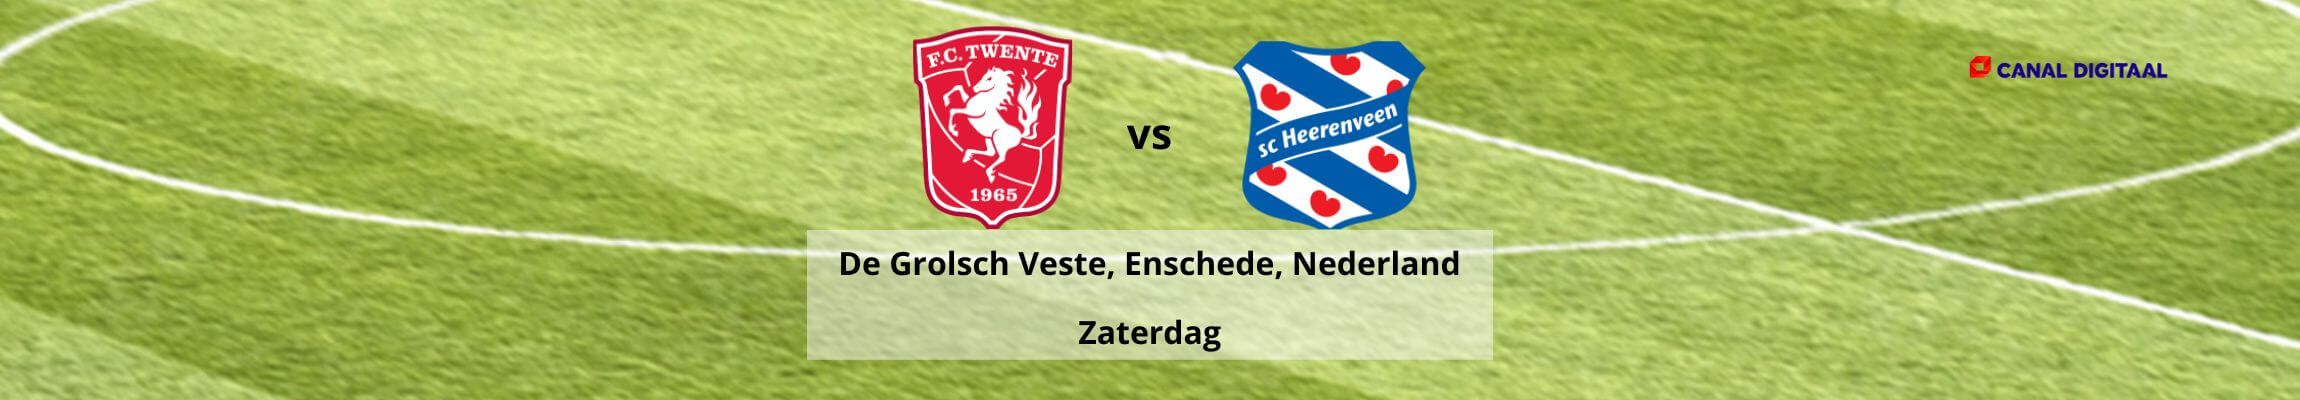 FCTwente-Heerenveen